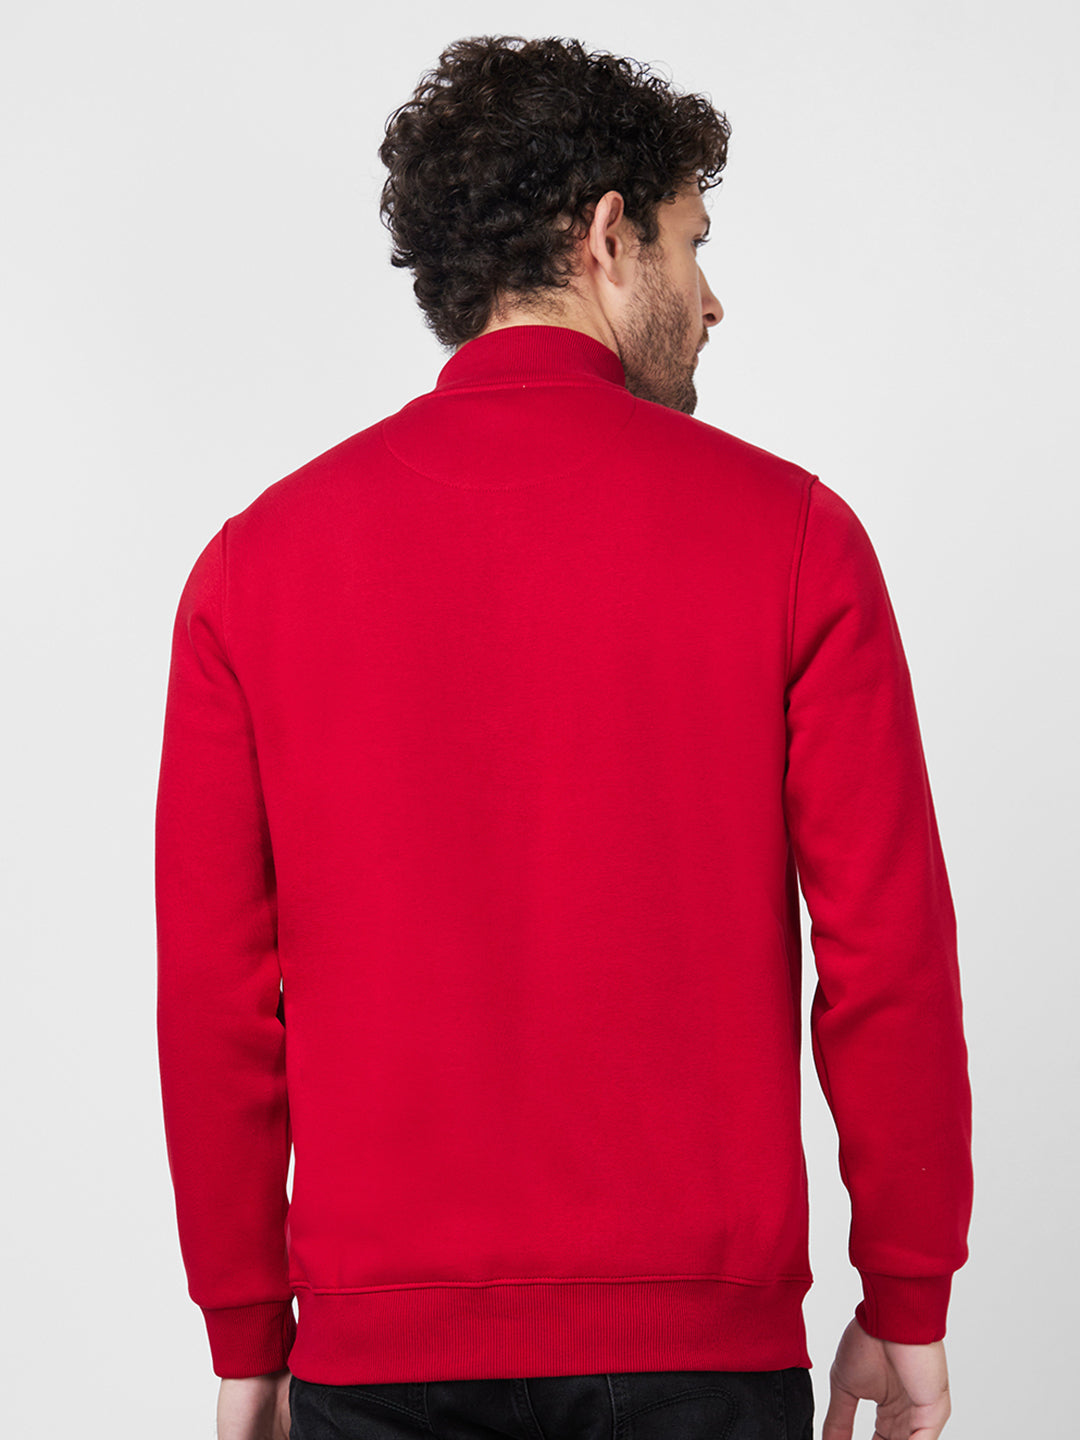 Spykar High Neck Full Sleeve Red Sweatshirt For Men